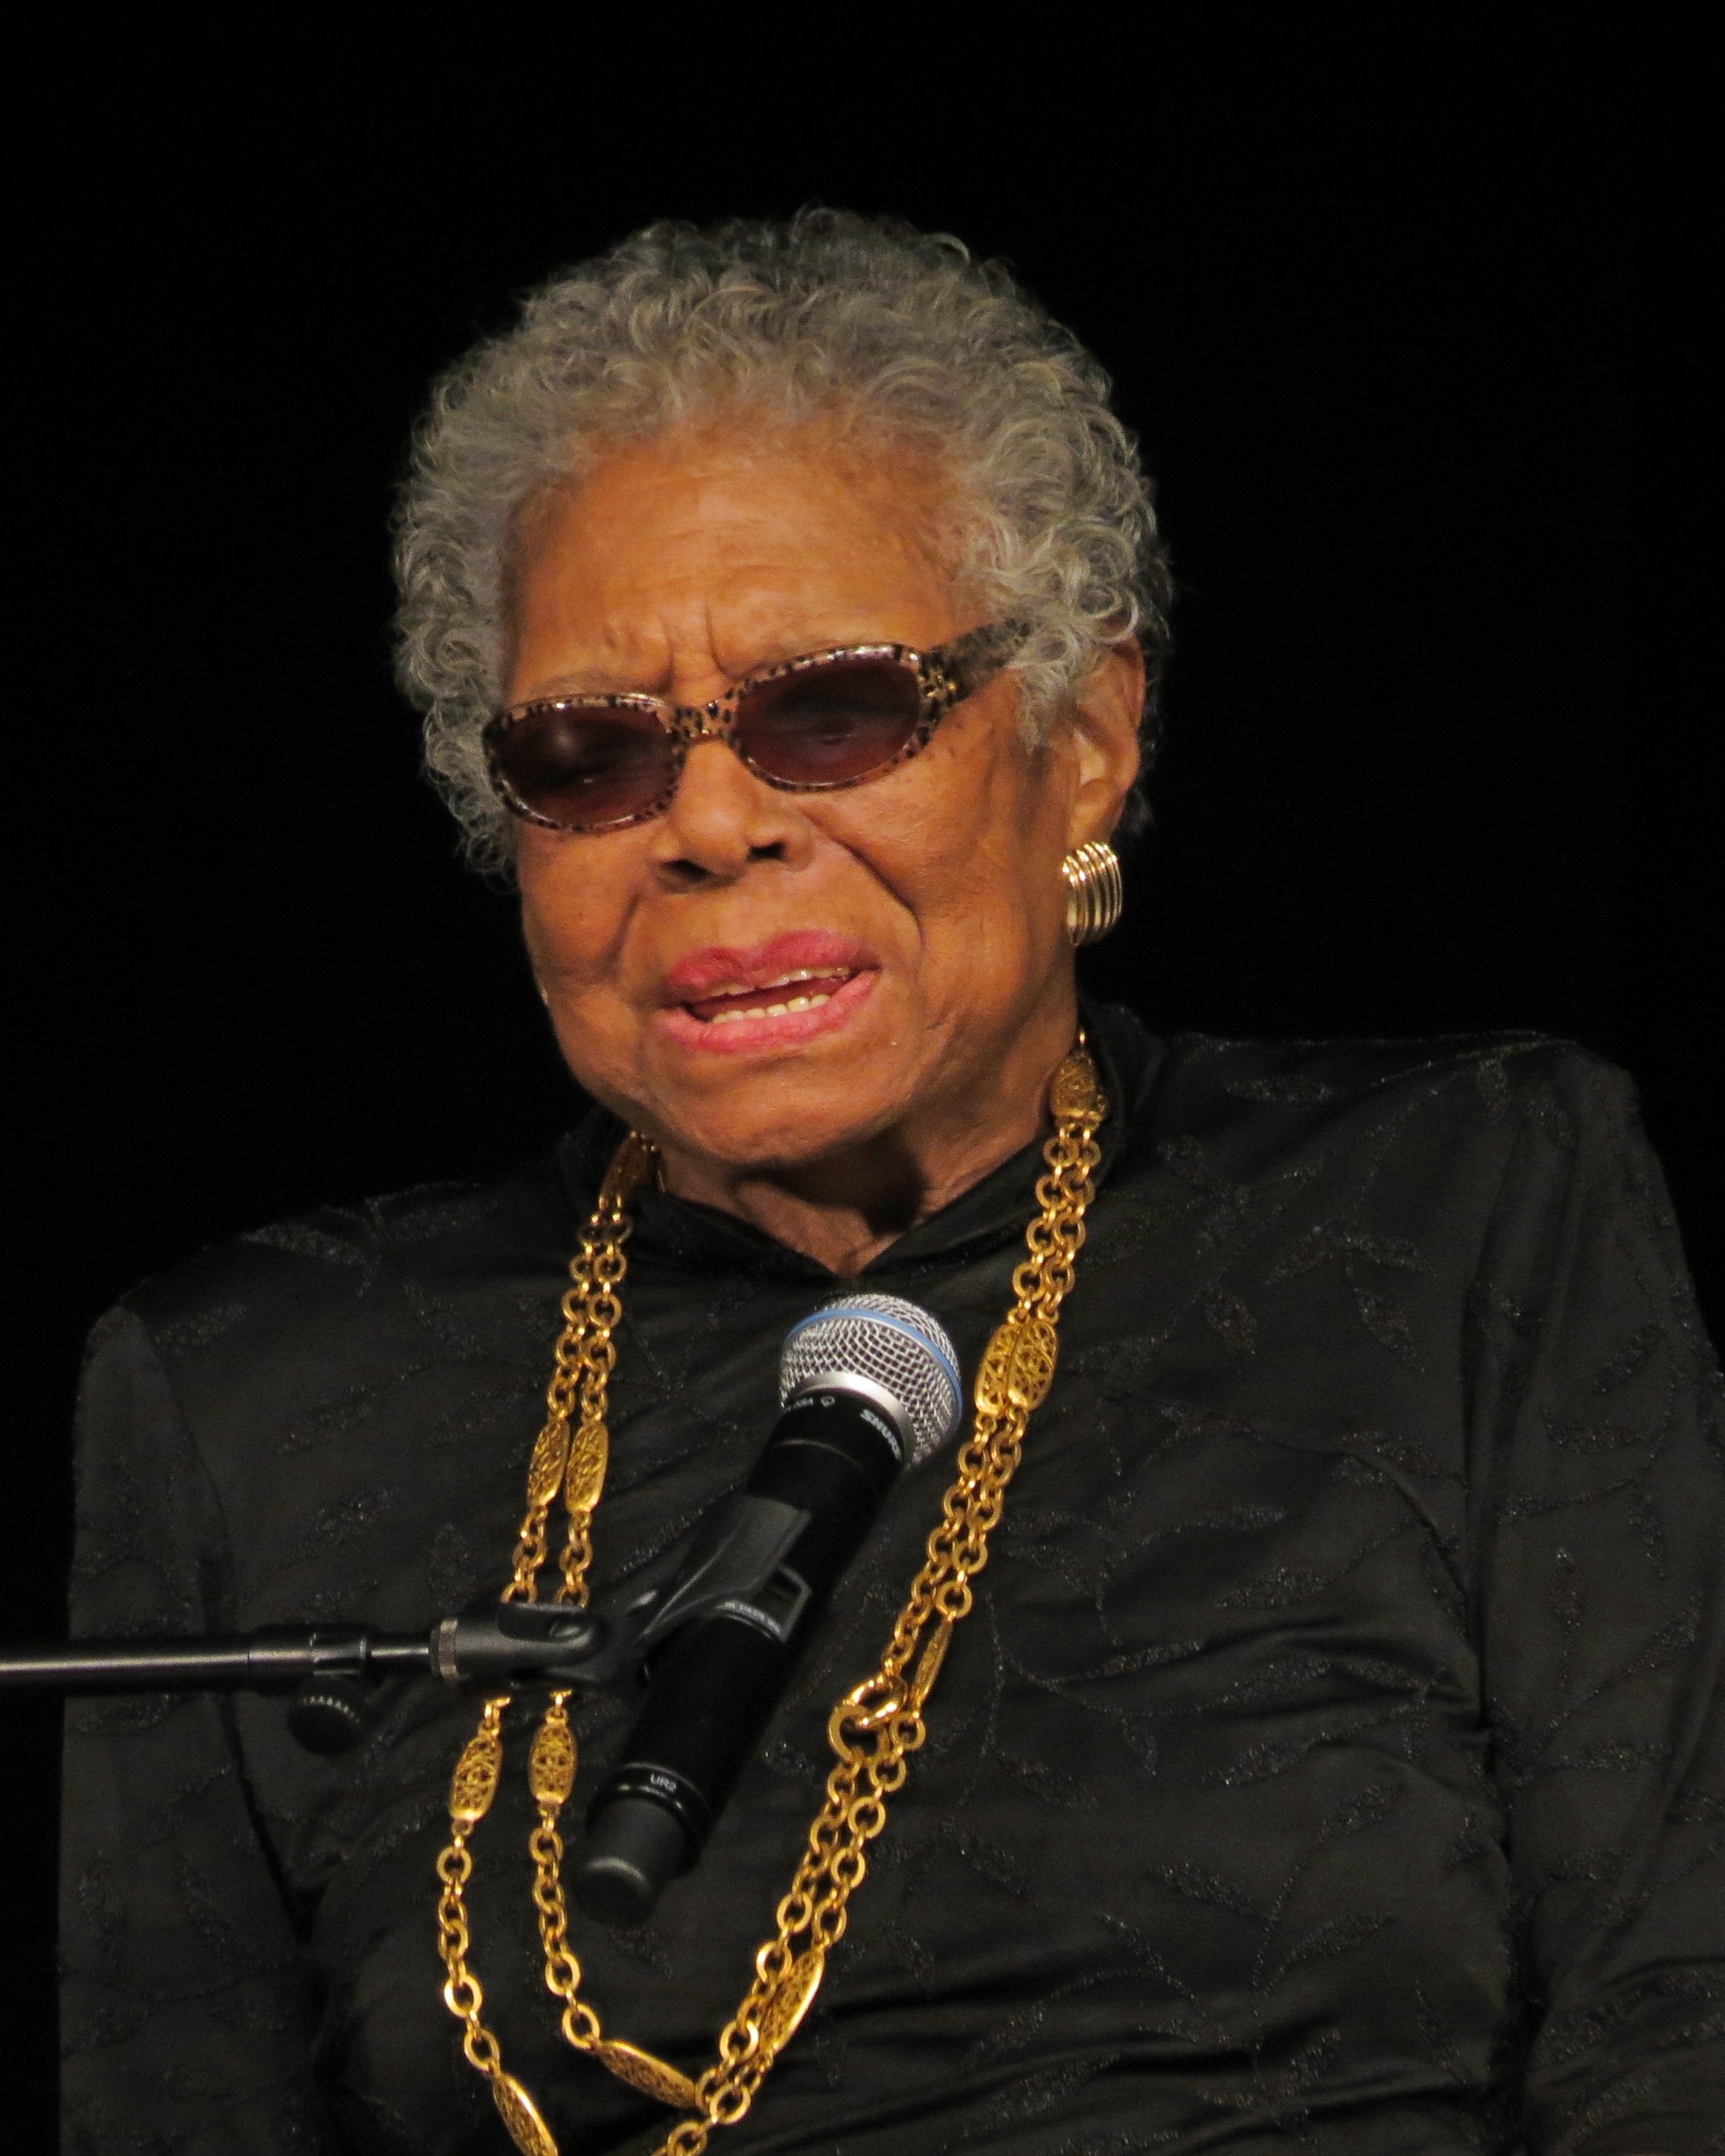 auteur Maya Angelou de la citation Vous ne pouvez devenir vraiment accompli que sur quelque chose que vous aimez. Ne gagnez pas de l'argent votre objectif. Au lieu de cela, poursuivez les choses que vous aimez faire, puis faites-les si bien que les gens ne peuvent pas vous quitter des yeux.